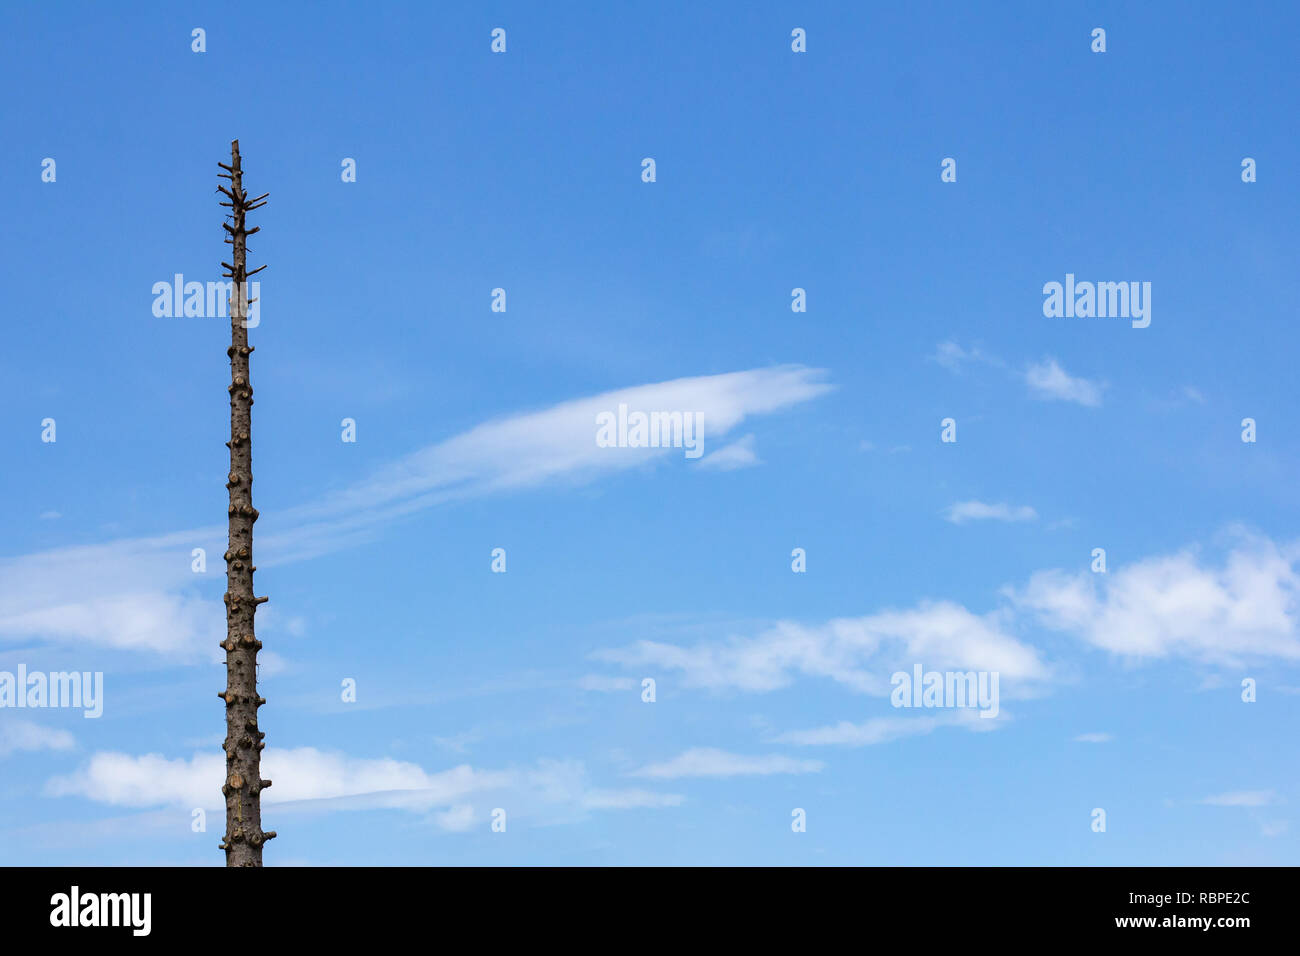 Baum mit allen Zweige abgeschnitten gegen einen blauen Himmel mit dünnen Wolken isoliert Stockfoto